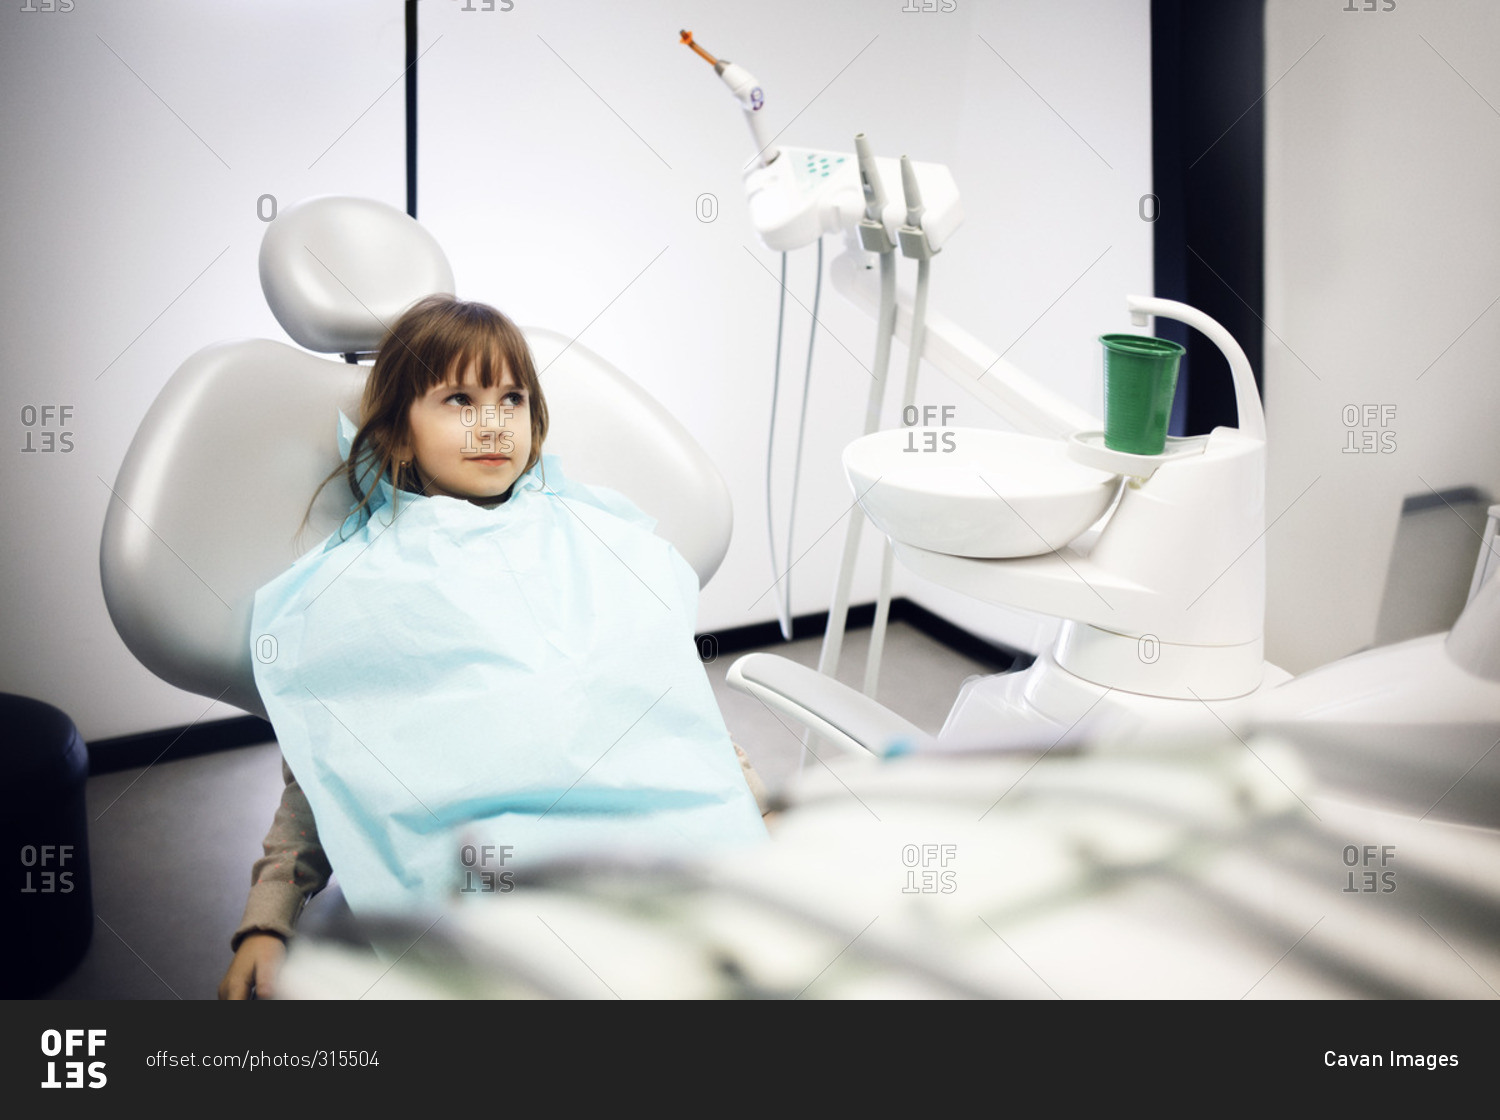 Girl wearing a dental bib sitting in dentist chair